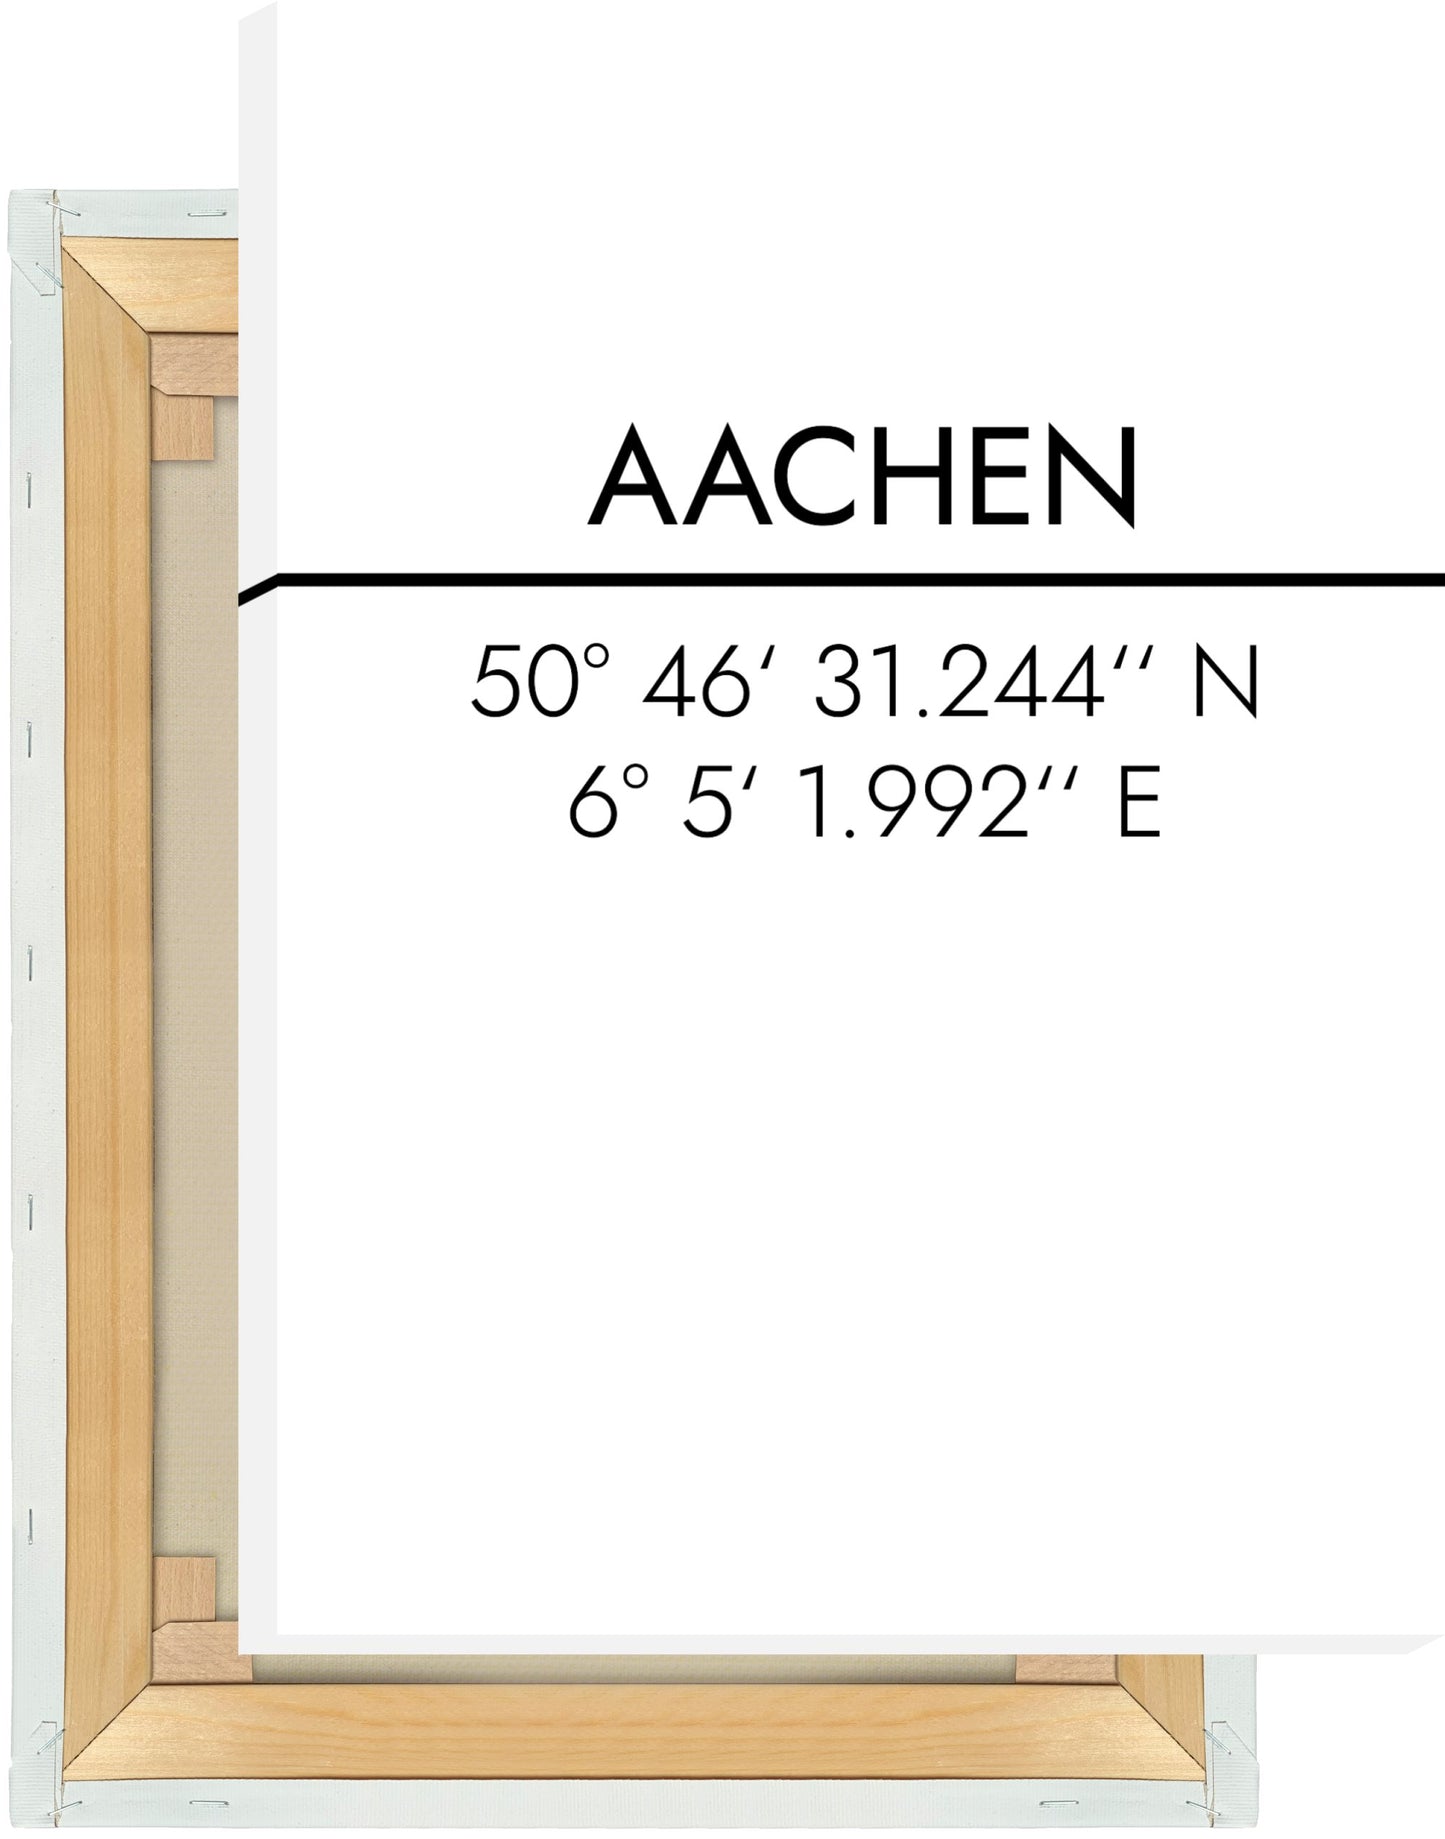 Leinwand Aachen Koordinaten #2